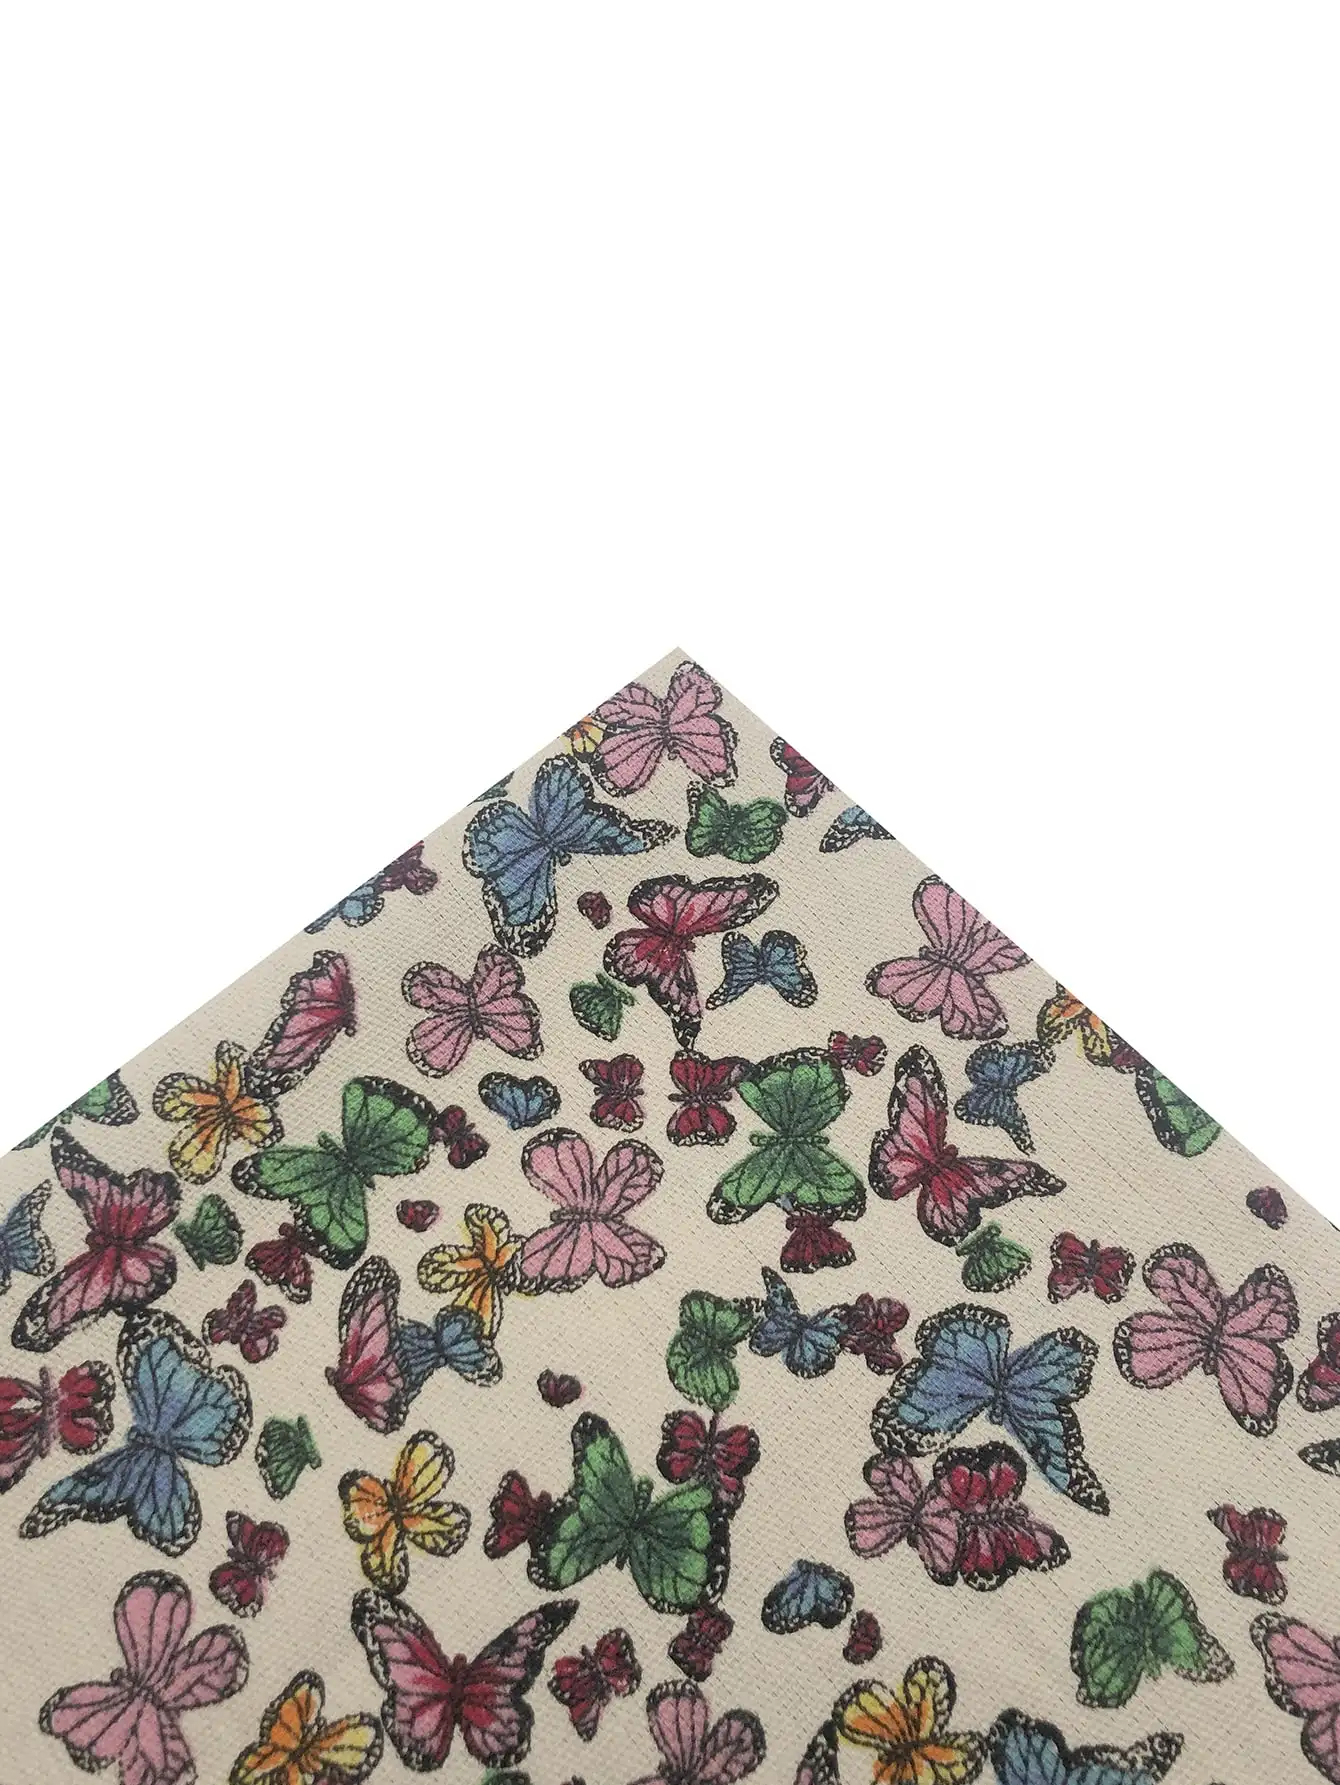 1 шт. квадратная ткань с принтом бабочки, сделанная своими руками. Изображение 5